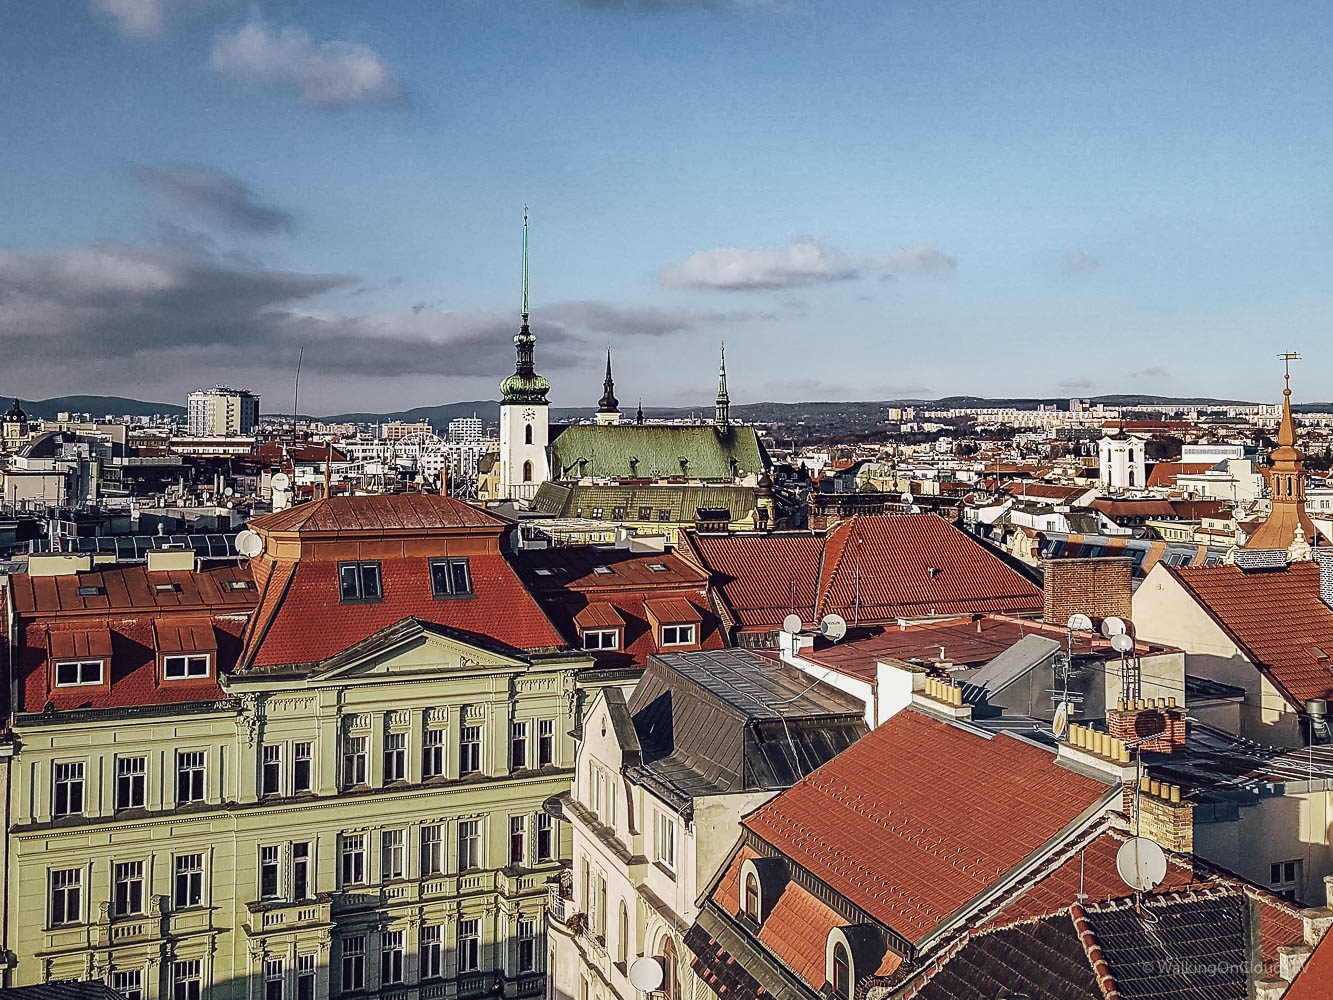 Brünn ist die zweitgrößte Stadt in Tschechien und neben Prag ideal für einen Kurzurlaub, Villa Tugendhat, Basilika Peter & Paul, Gebeinhaus, Palais Dietrichstein, Labyrinth unter der Stadt